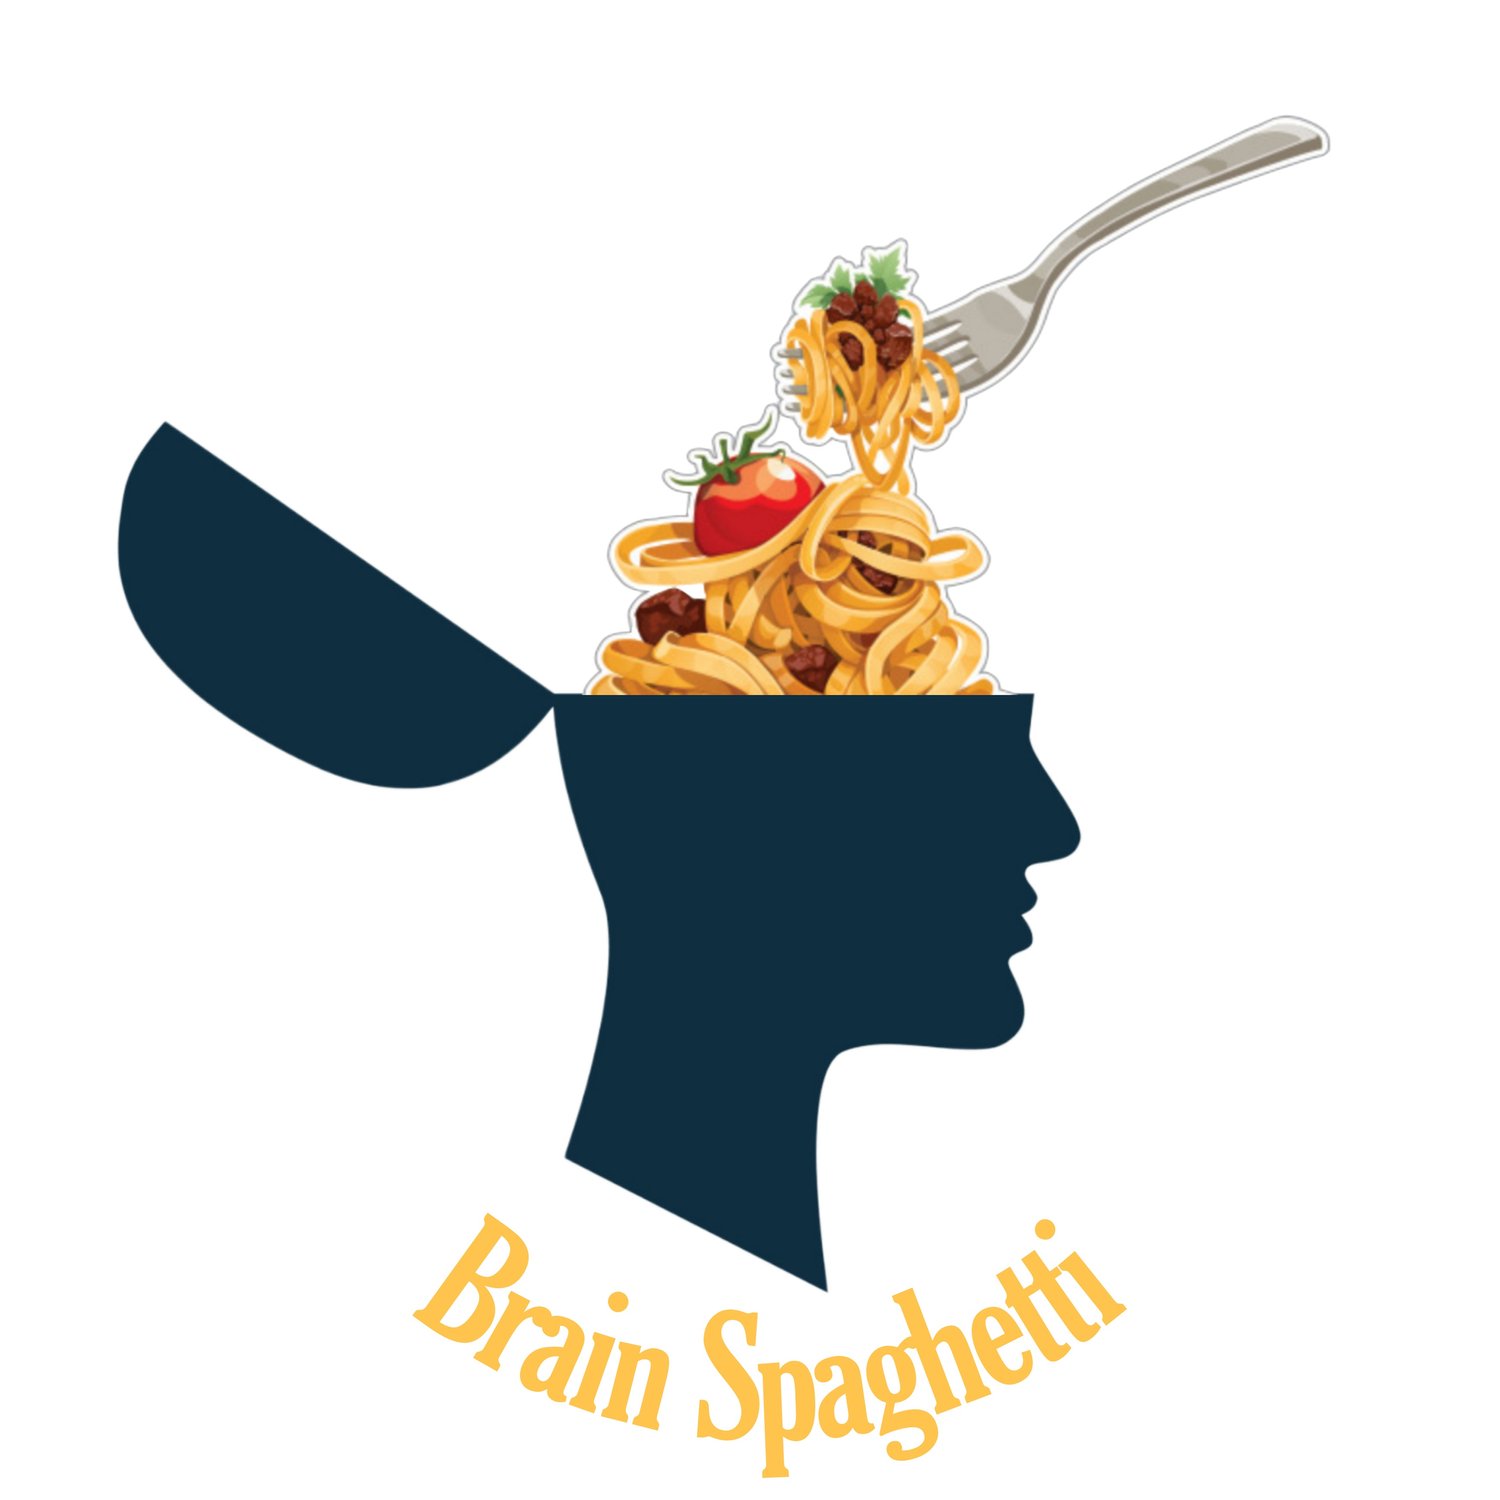 Brain Spaghetti